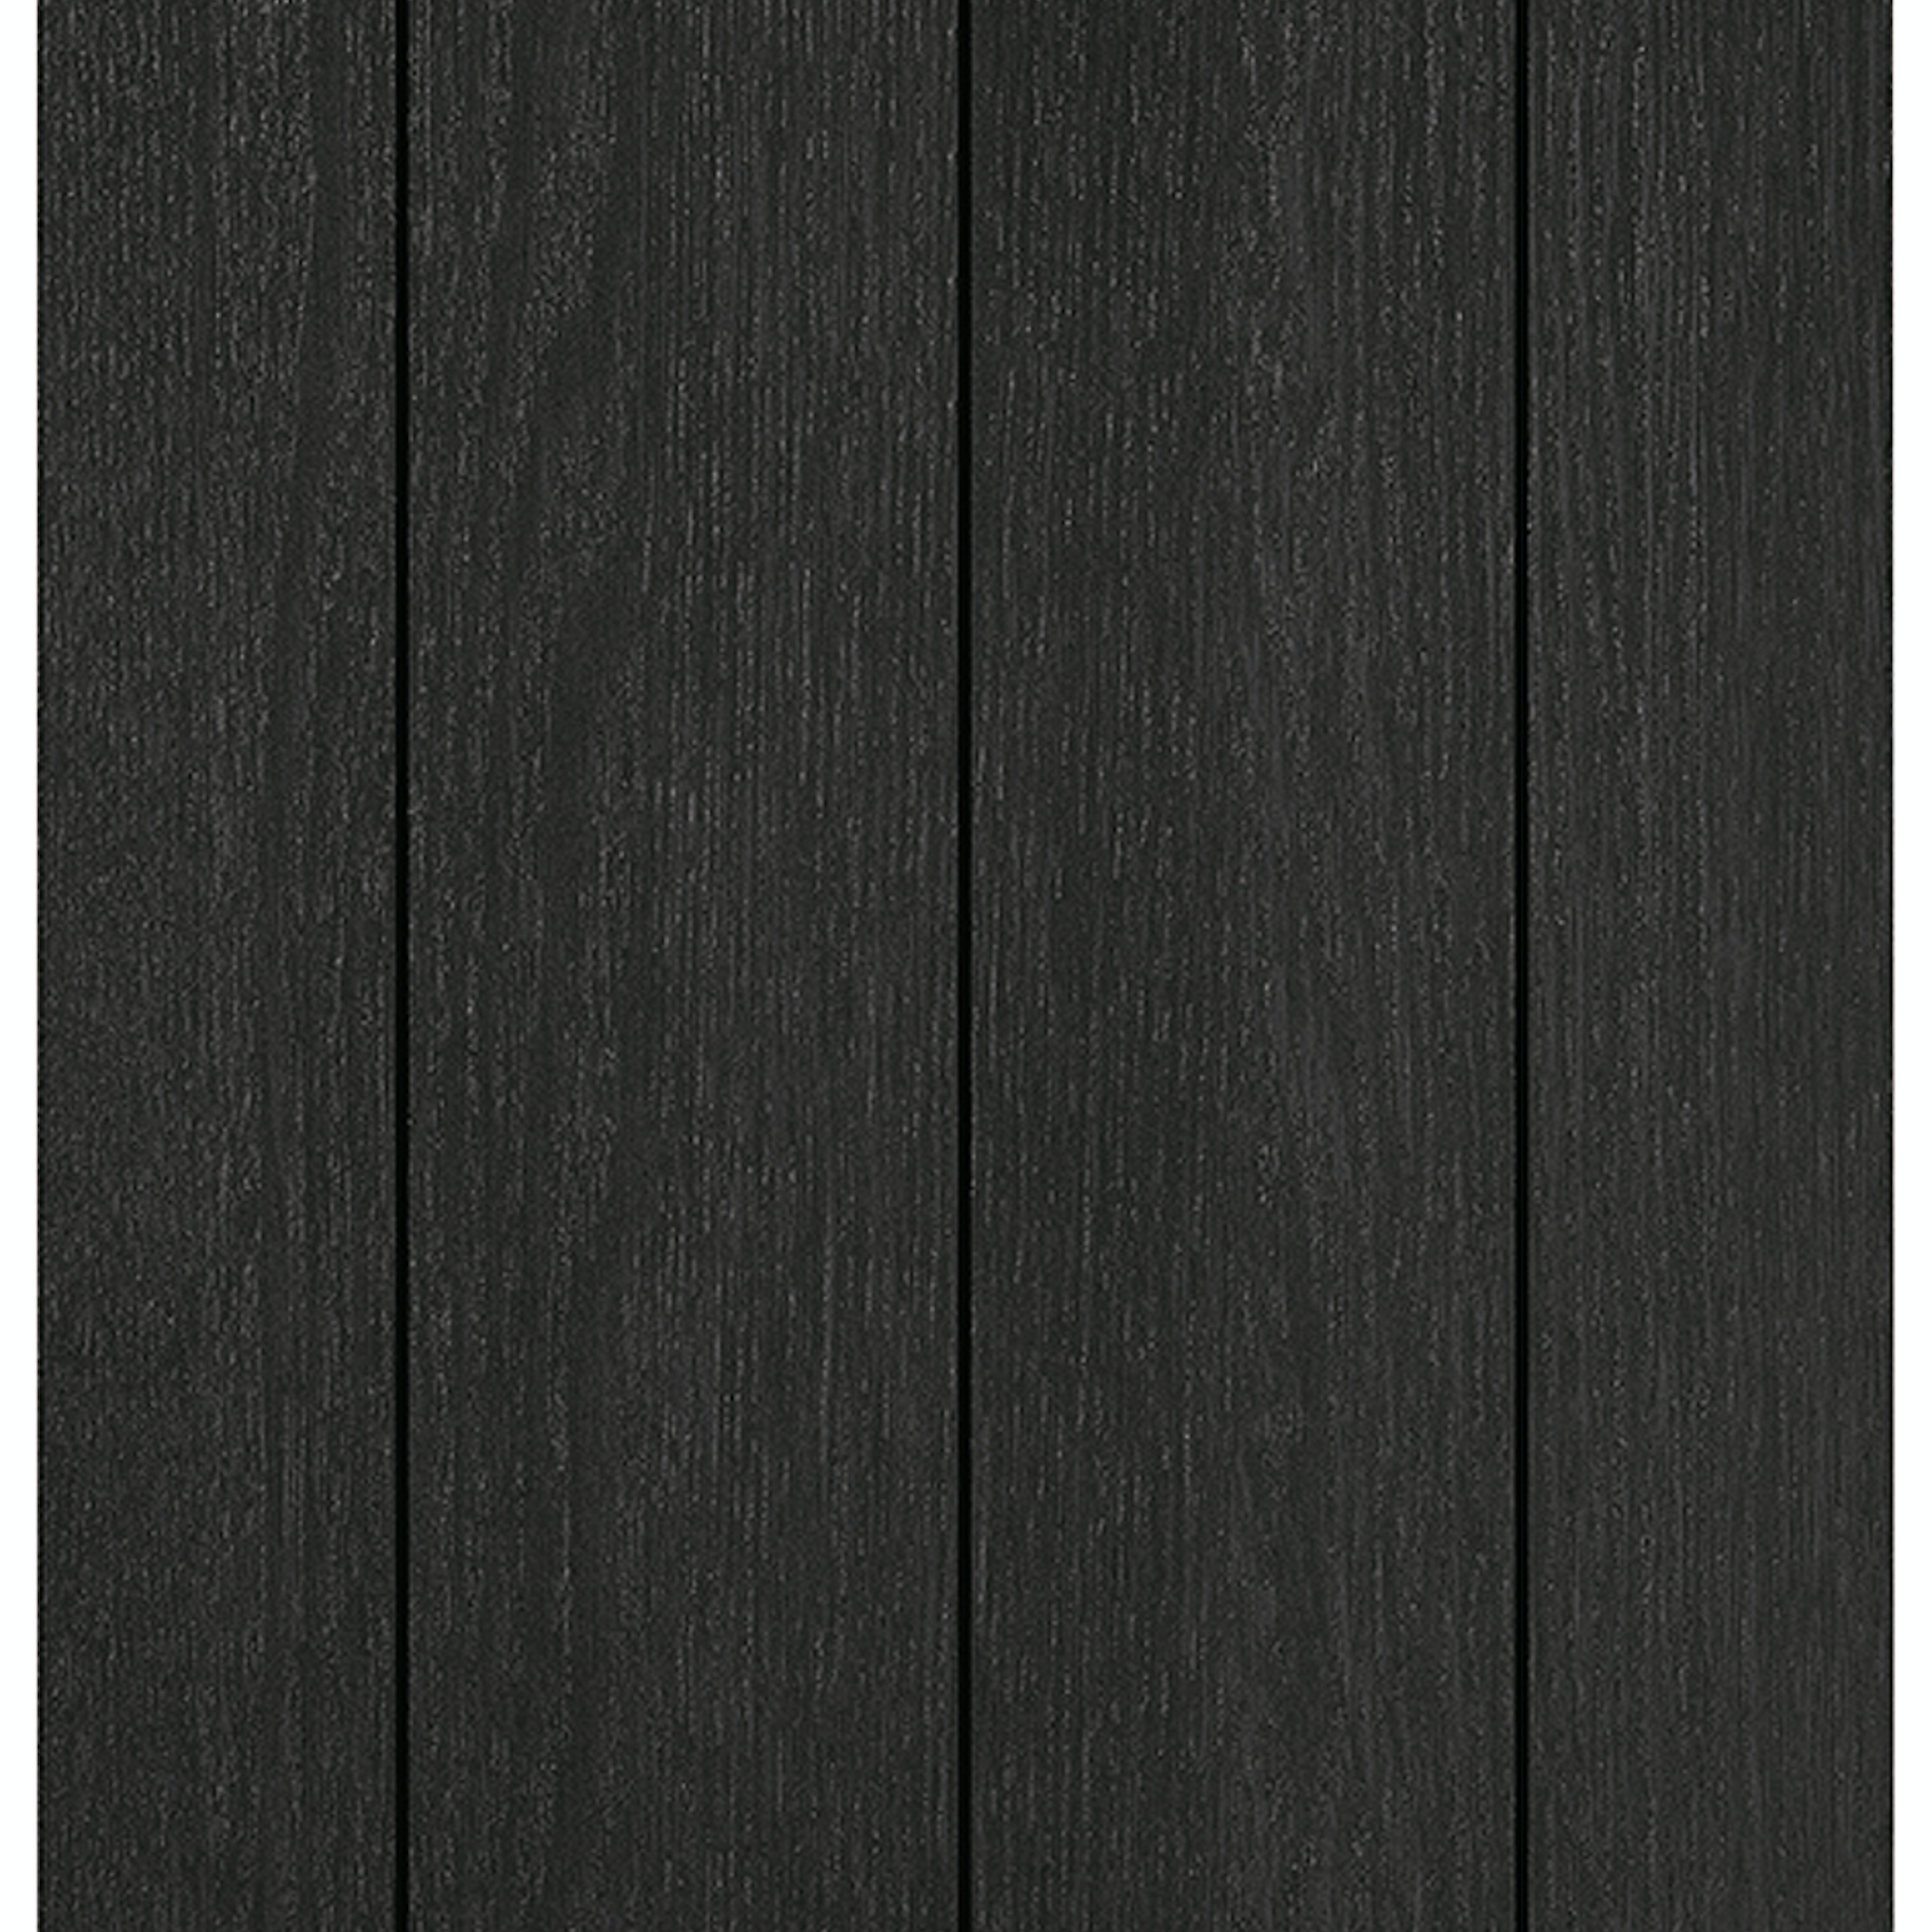 Eikenhout fineer keukenfront (912 Wildeiken zwart) met 10 cm groef-lamelbreedtebreedte